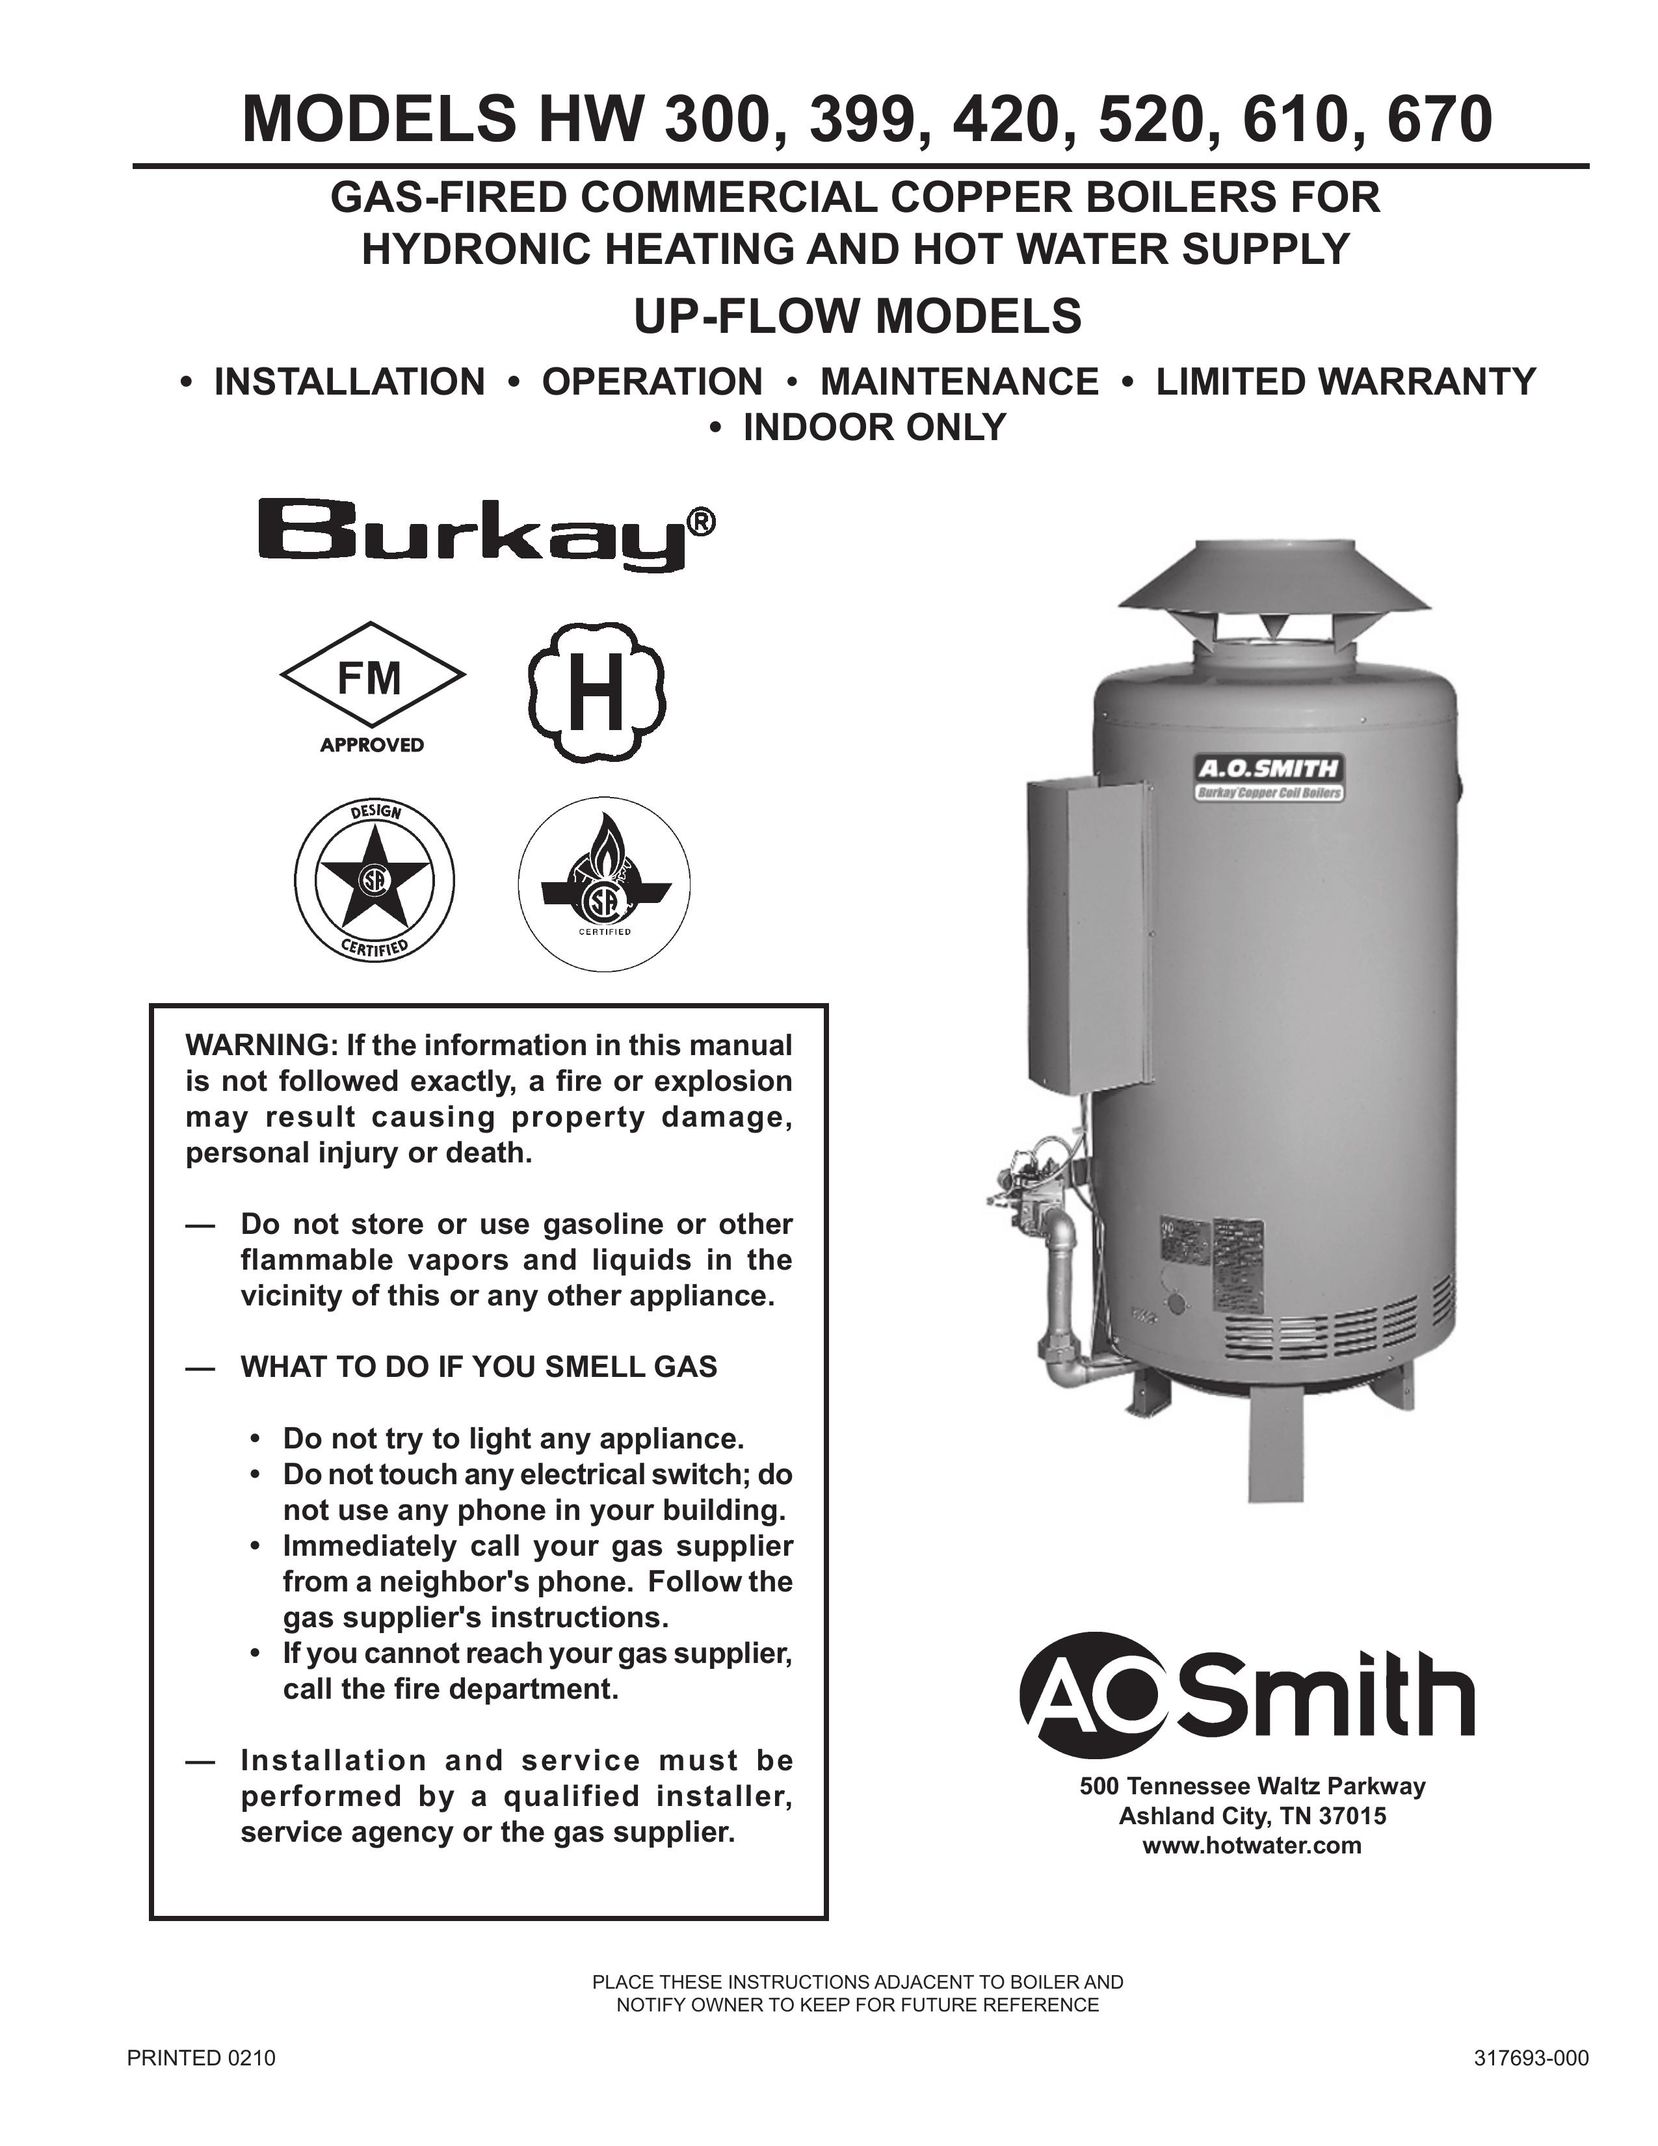 A.O. Smith HW 610 Boiler User Manual